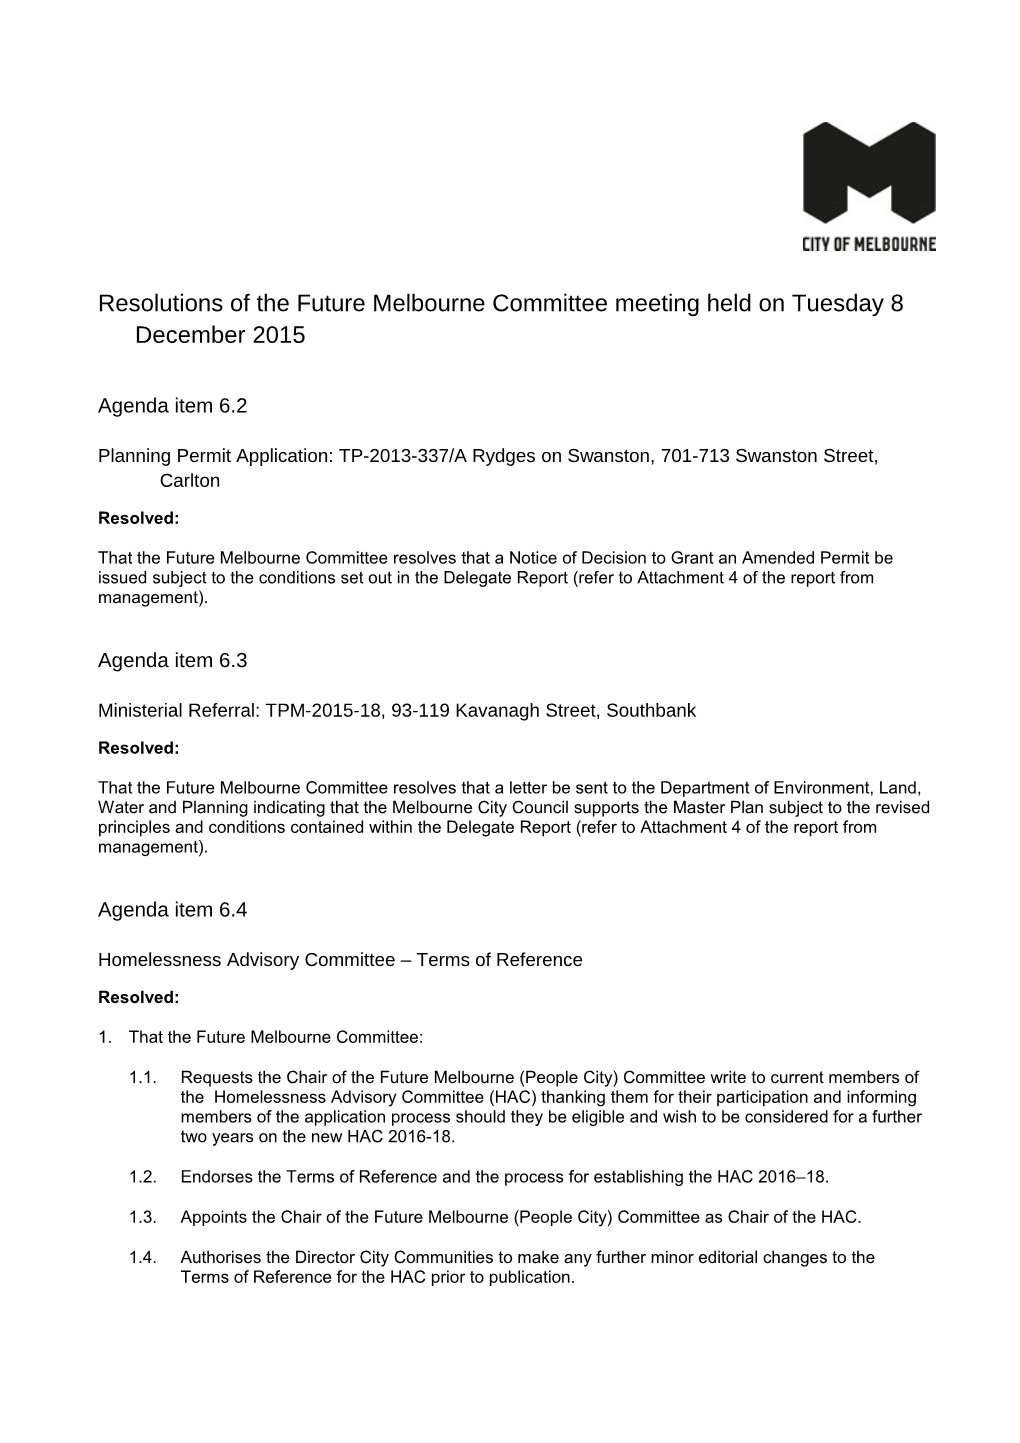 8 December 2015 FMC Meeting Resolutions